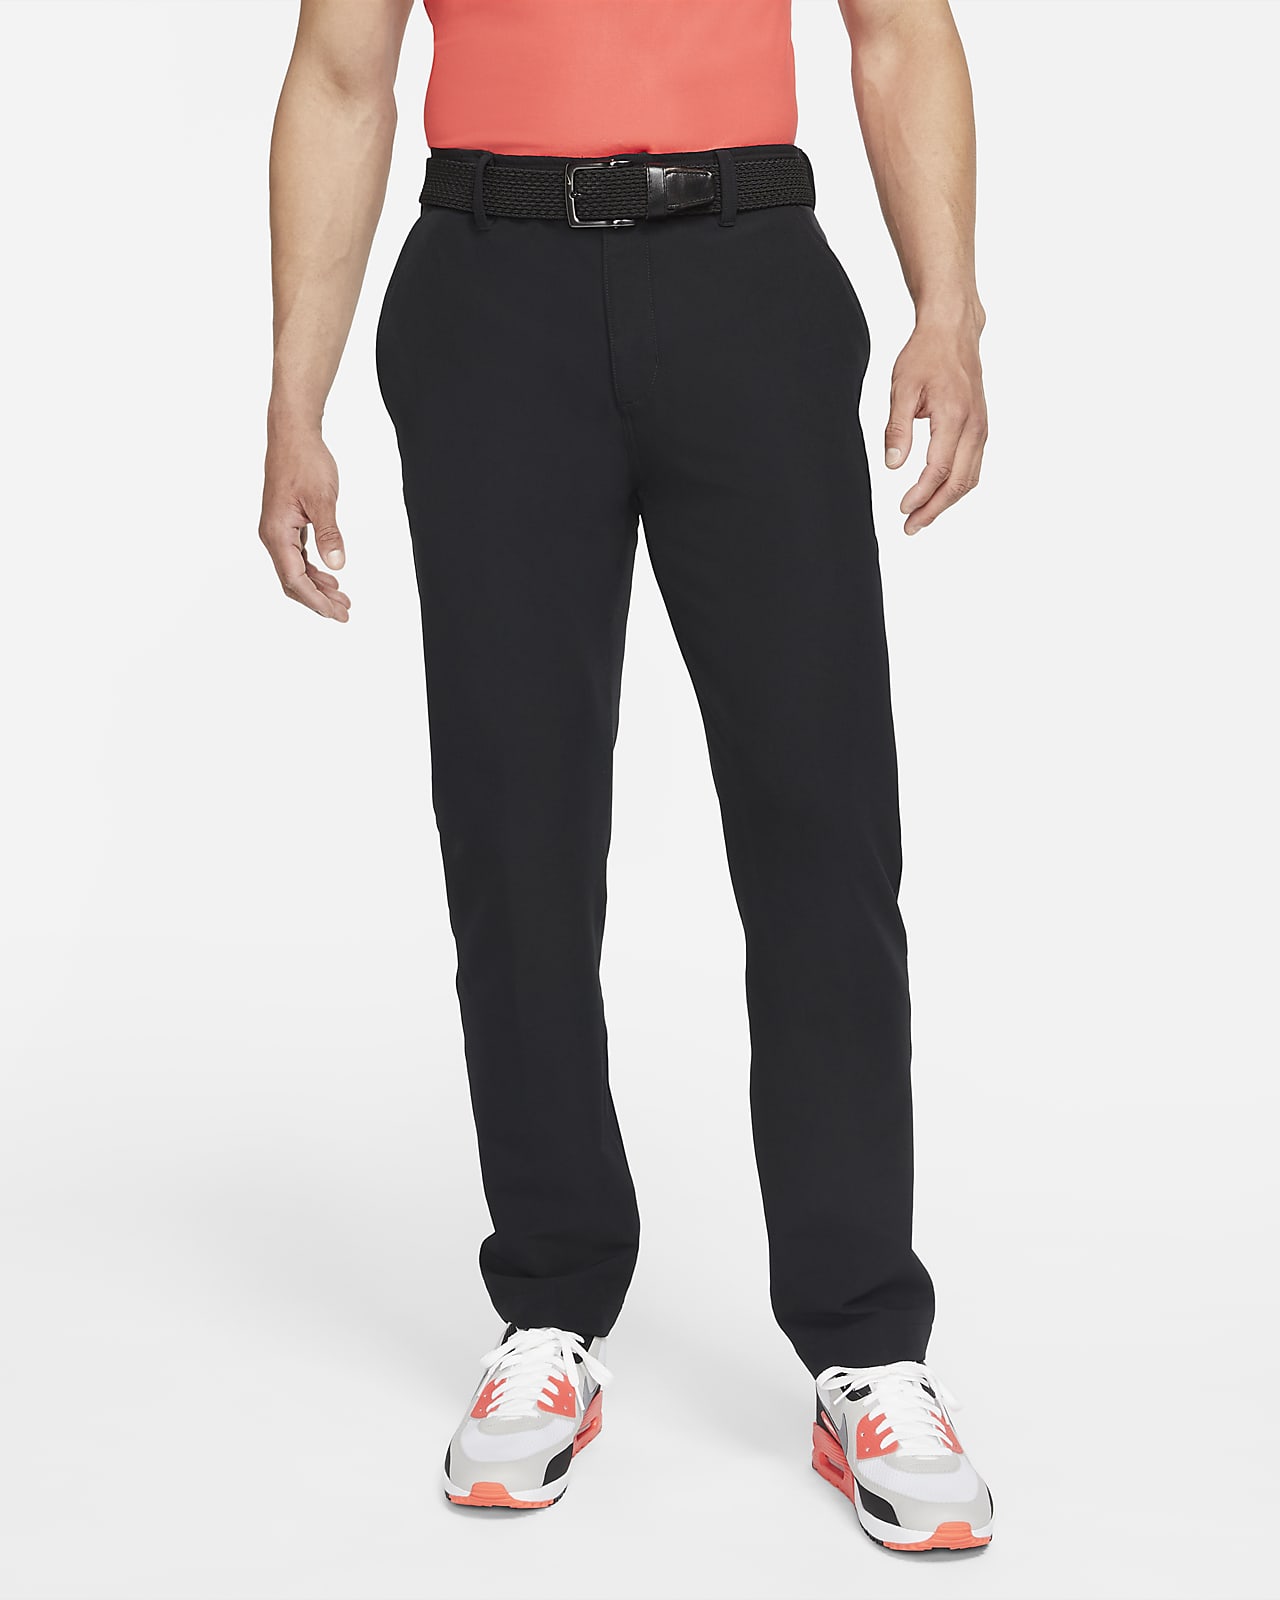 Anillo duro mamífero papelería Pants utilitarios de golf para hombre Nike Repel. Nike.com